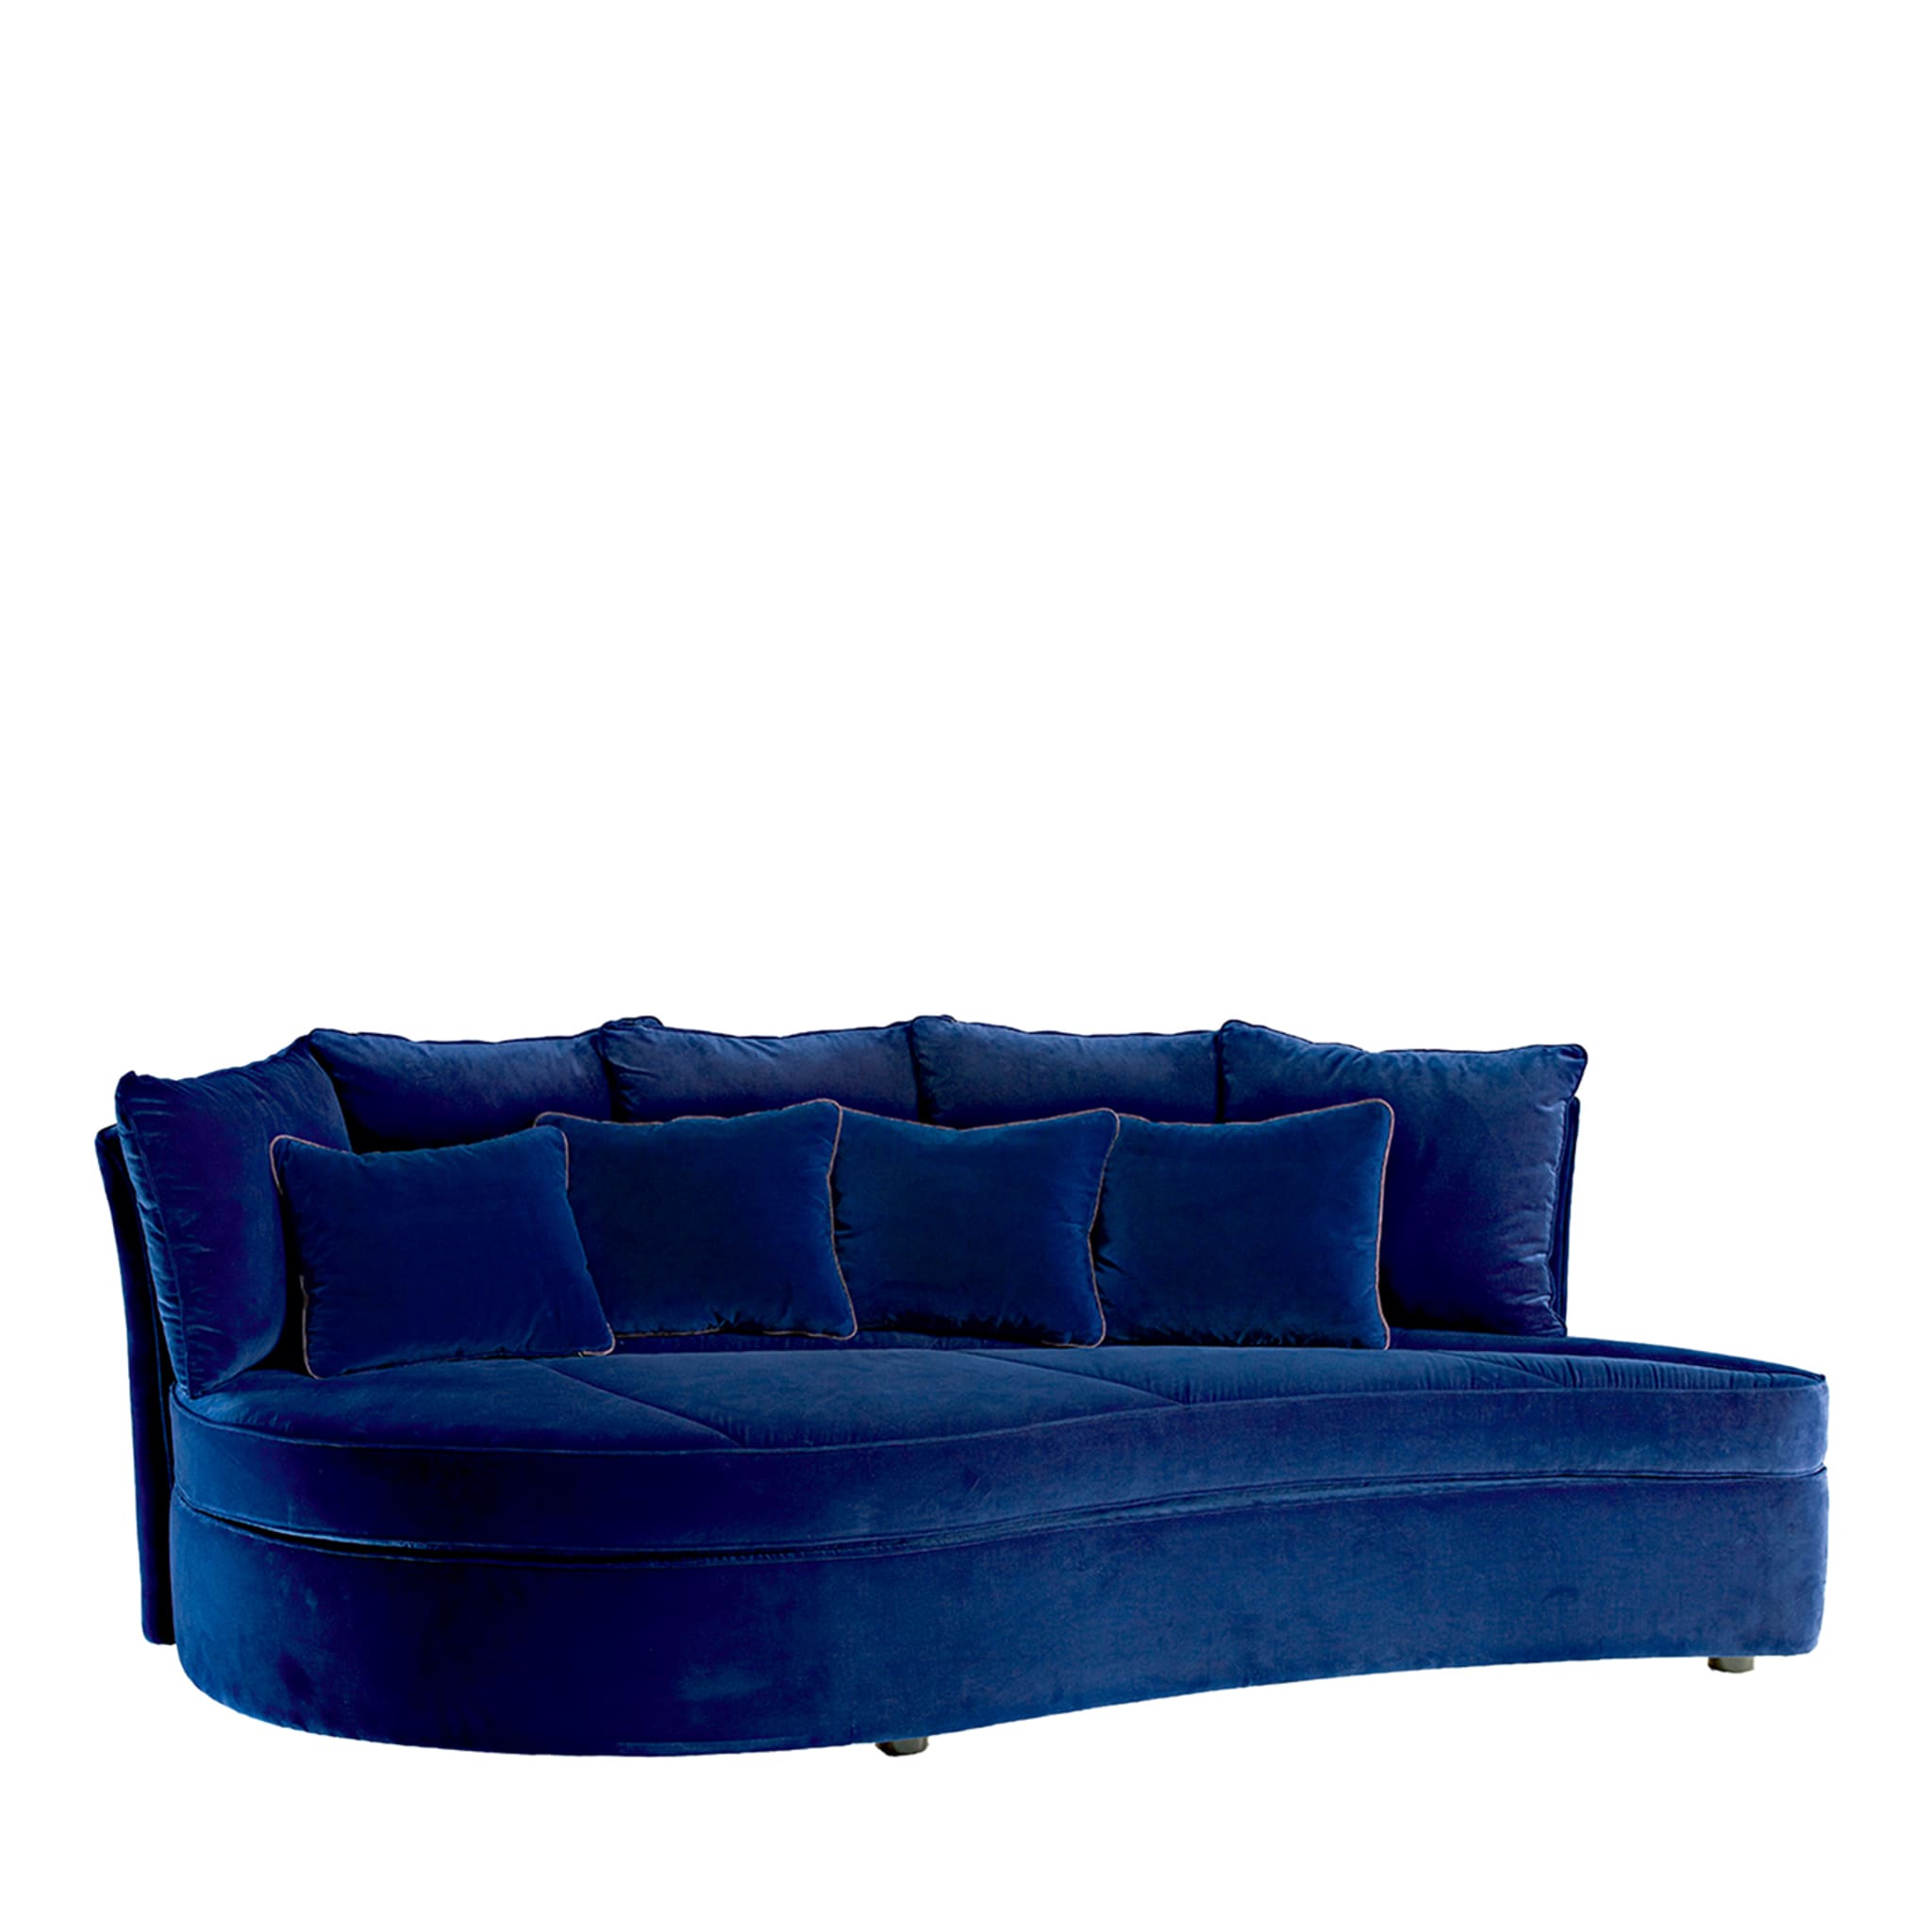 Bloom Blue Sofa - Hauptansicht